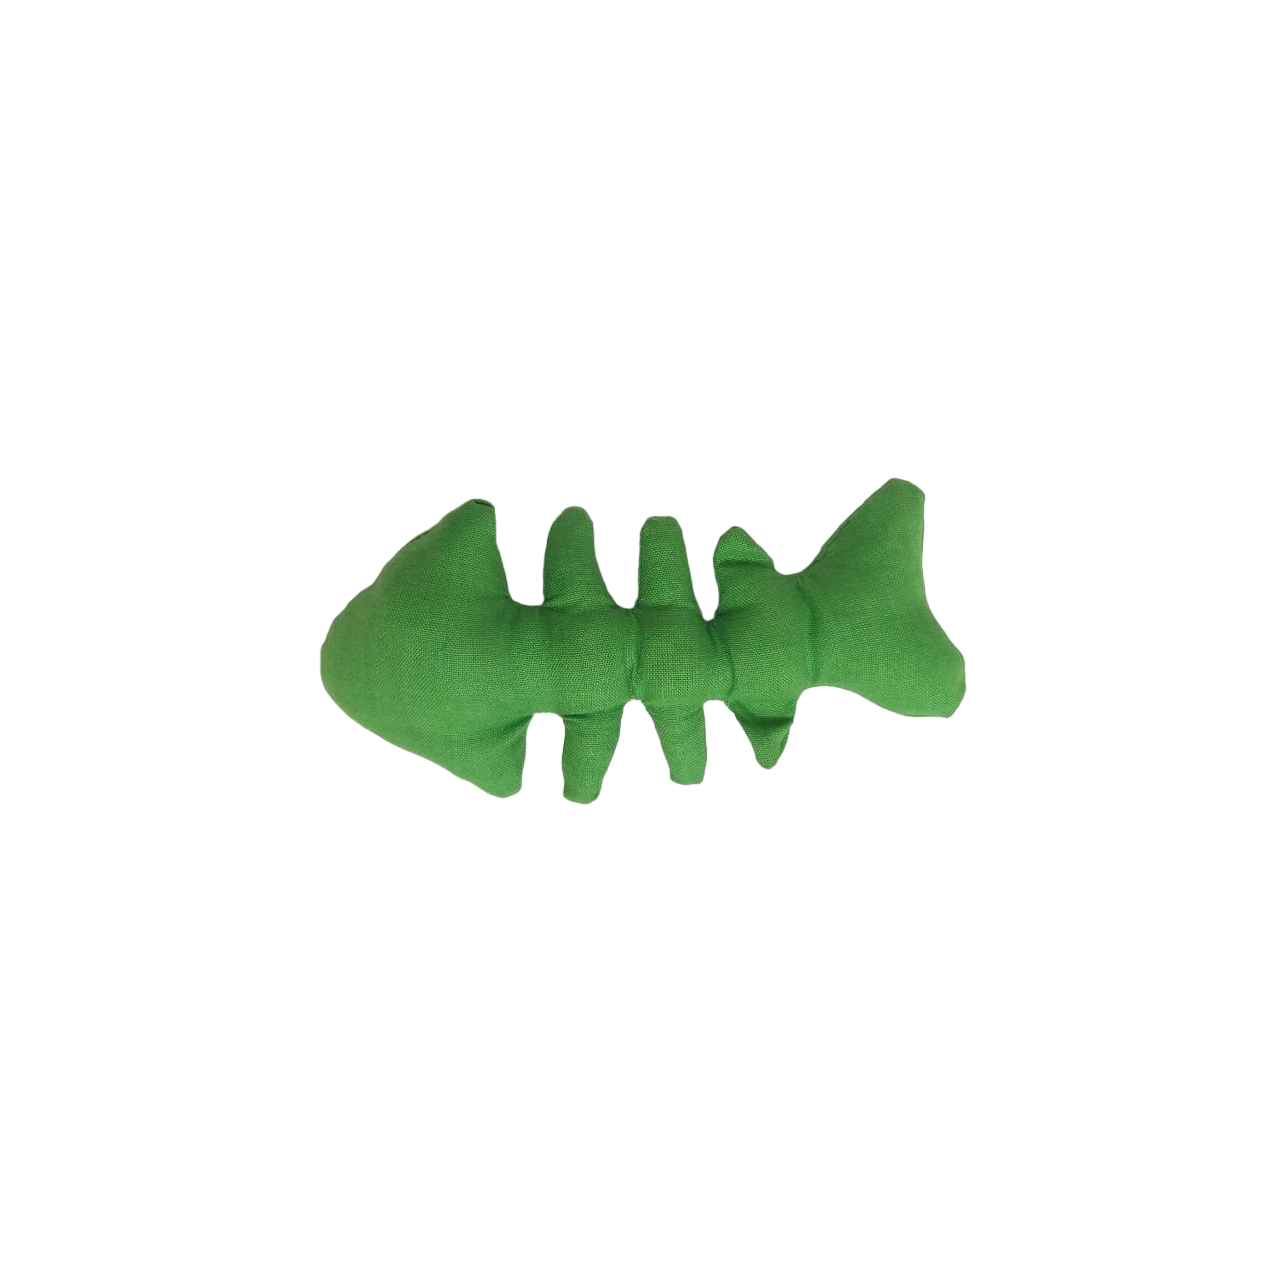 іграшка скелет риби зелений